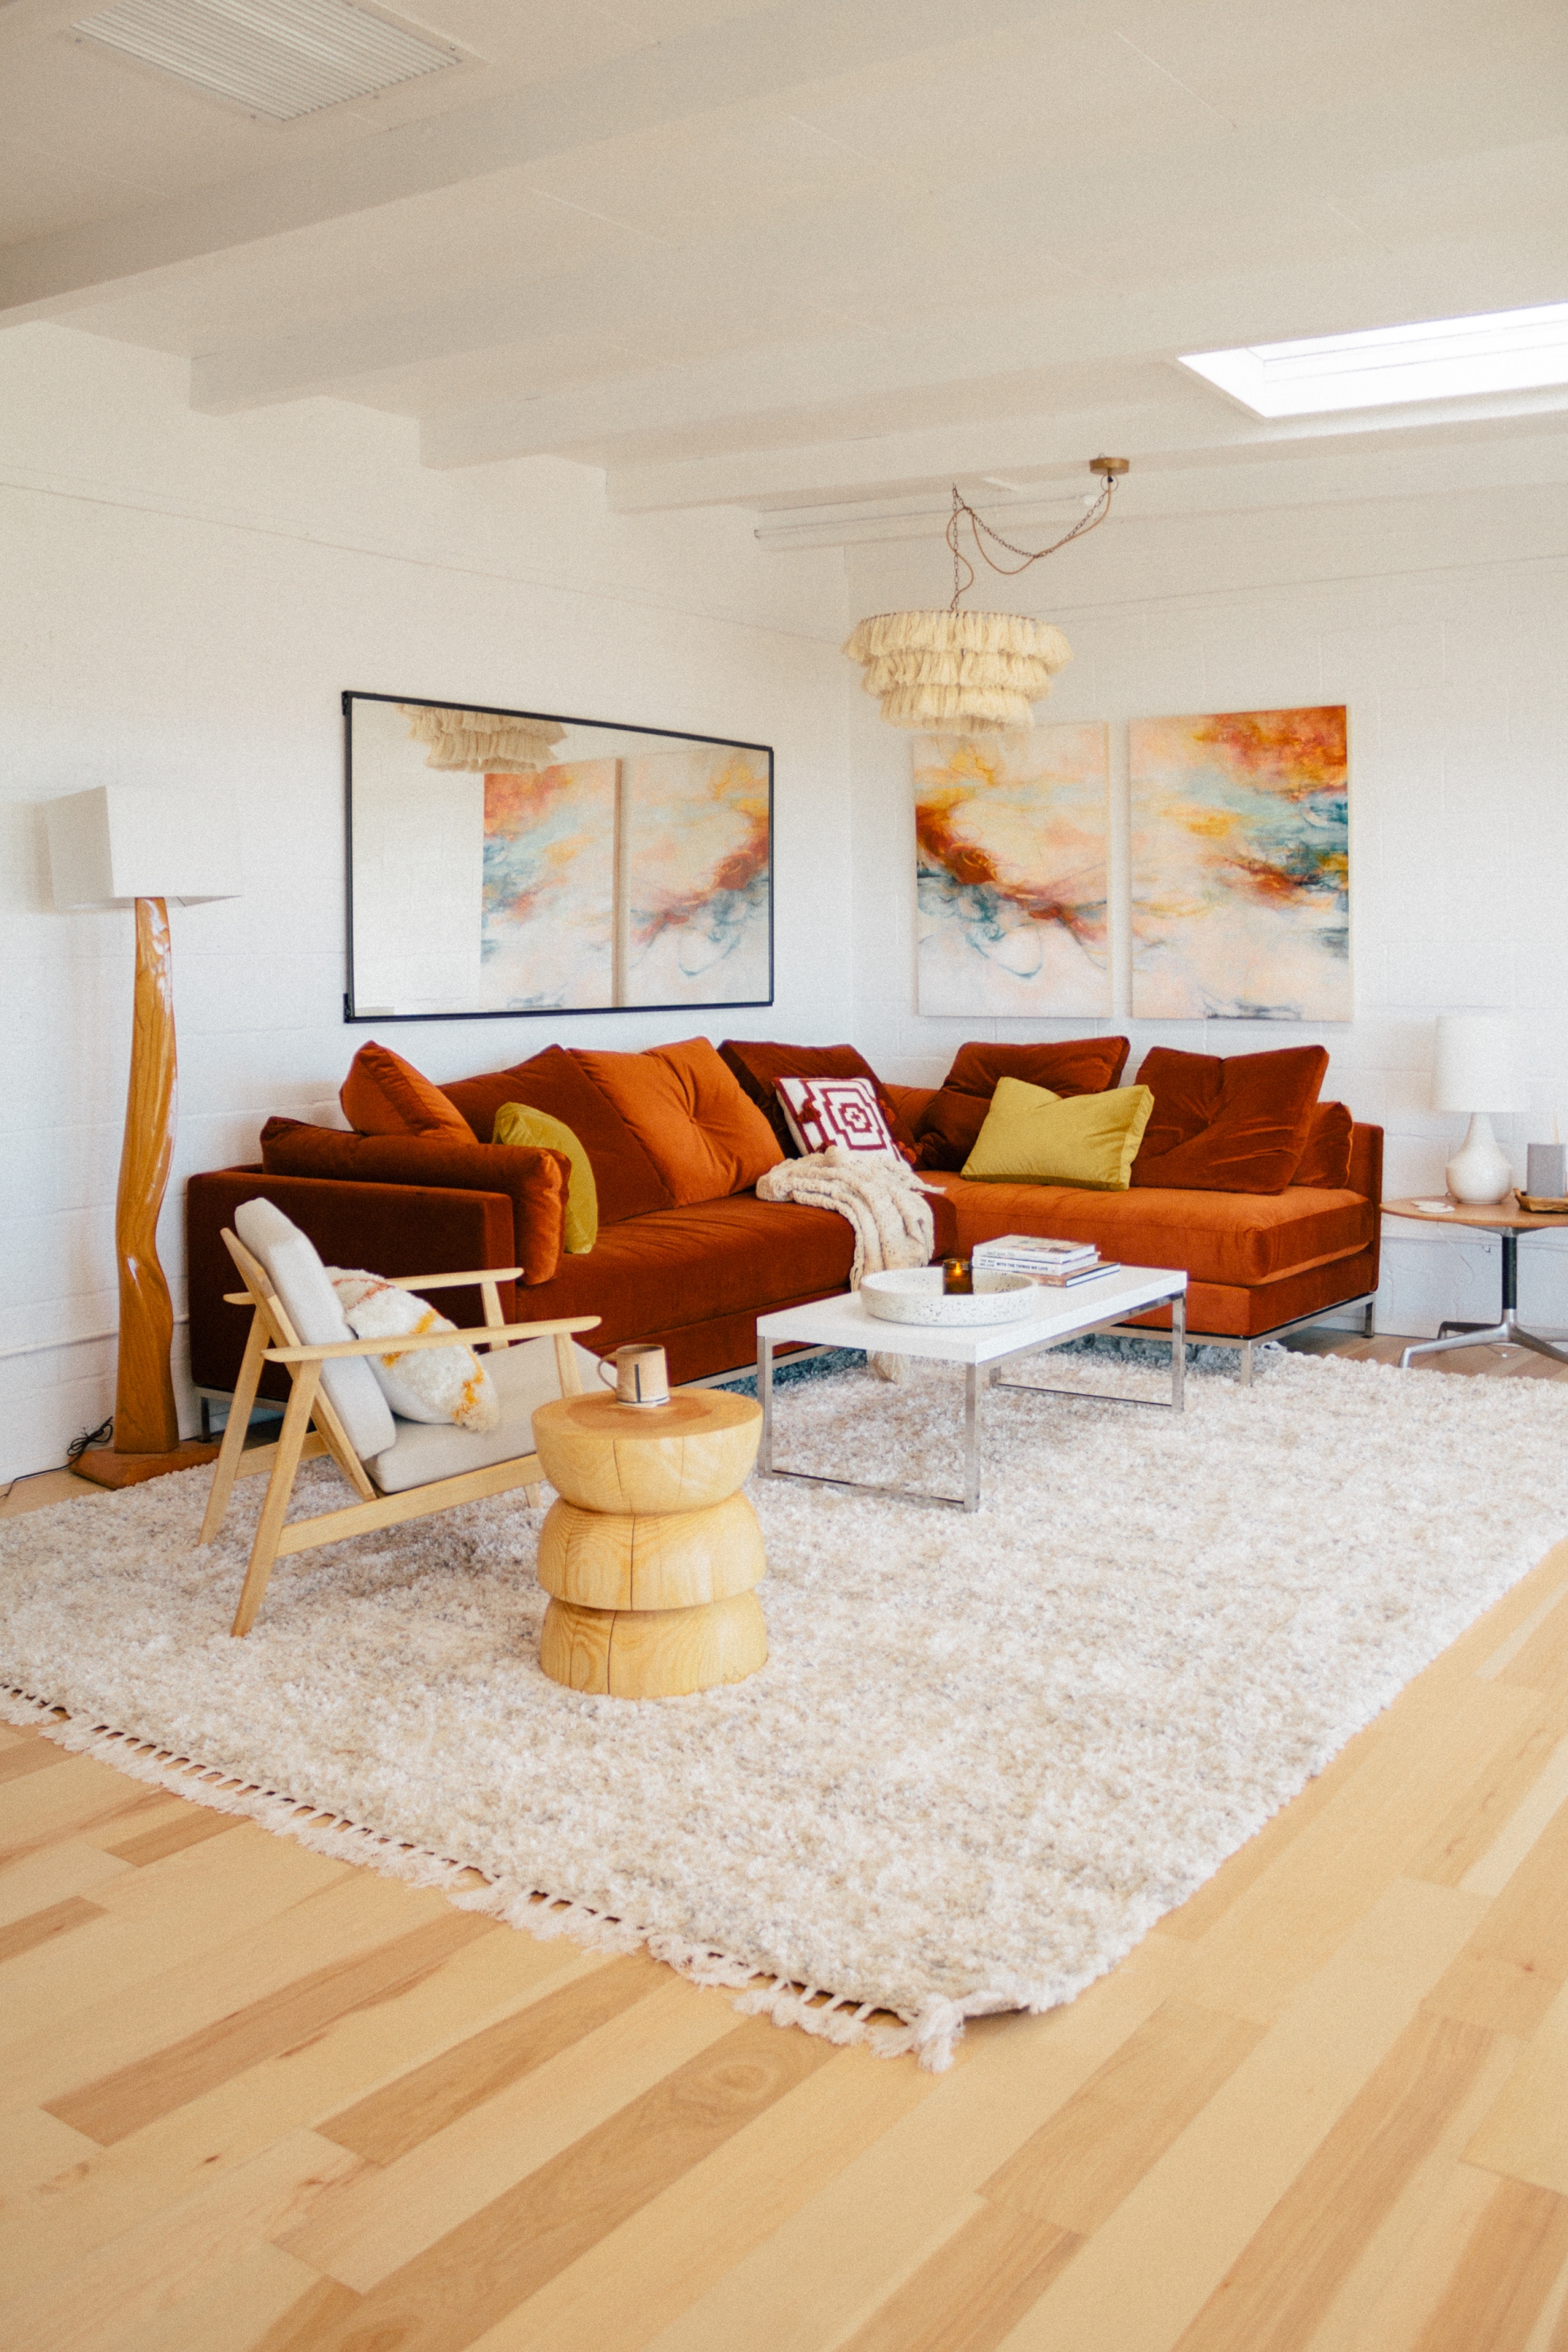 Mùa Thu - Đông là thời điểm lý tưởng để sử dụng những tone màu nóng, tạo sự ấm cúng cho phòng khách gần gũi hơn. Không gian này lựa chọn rất nhiều bảng màu vàng mù tạt, cam gạch, nâu đỏ,... để trang trí sofa, bố trí trên tấm thảm trải sàn êm ái.